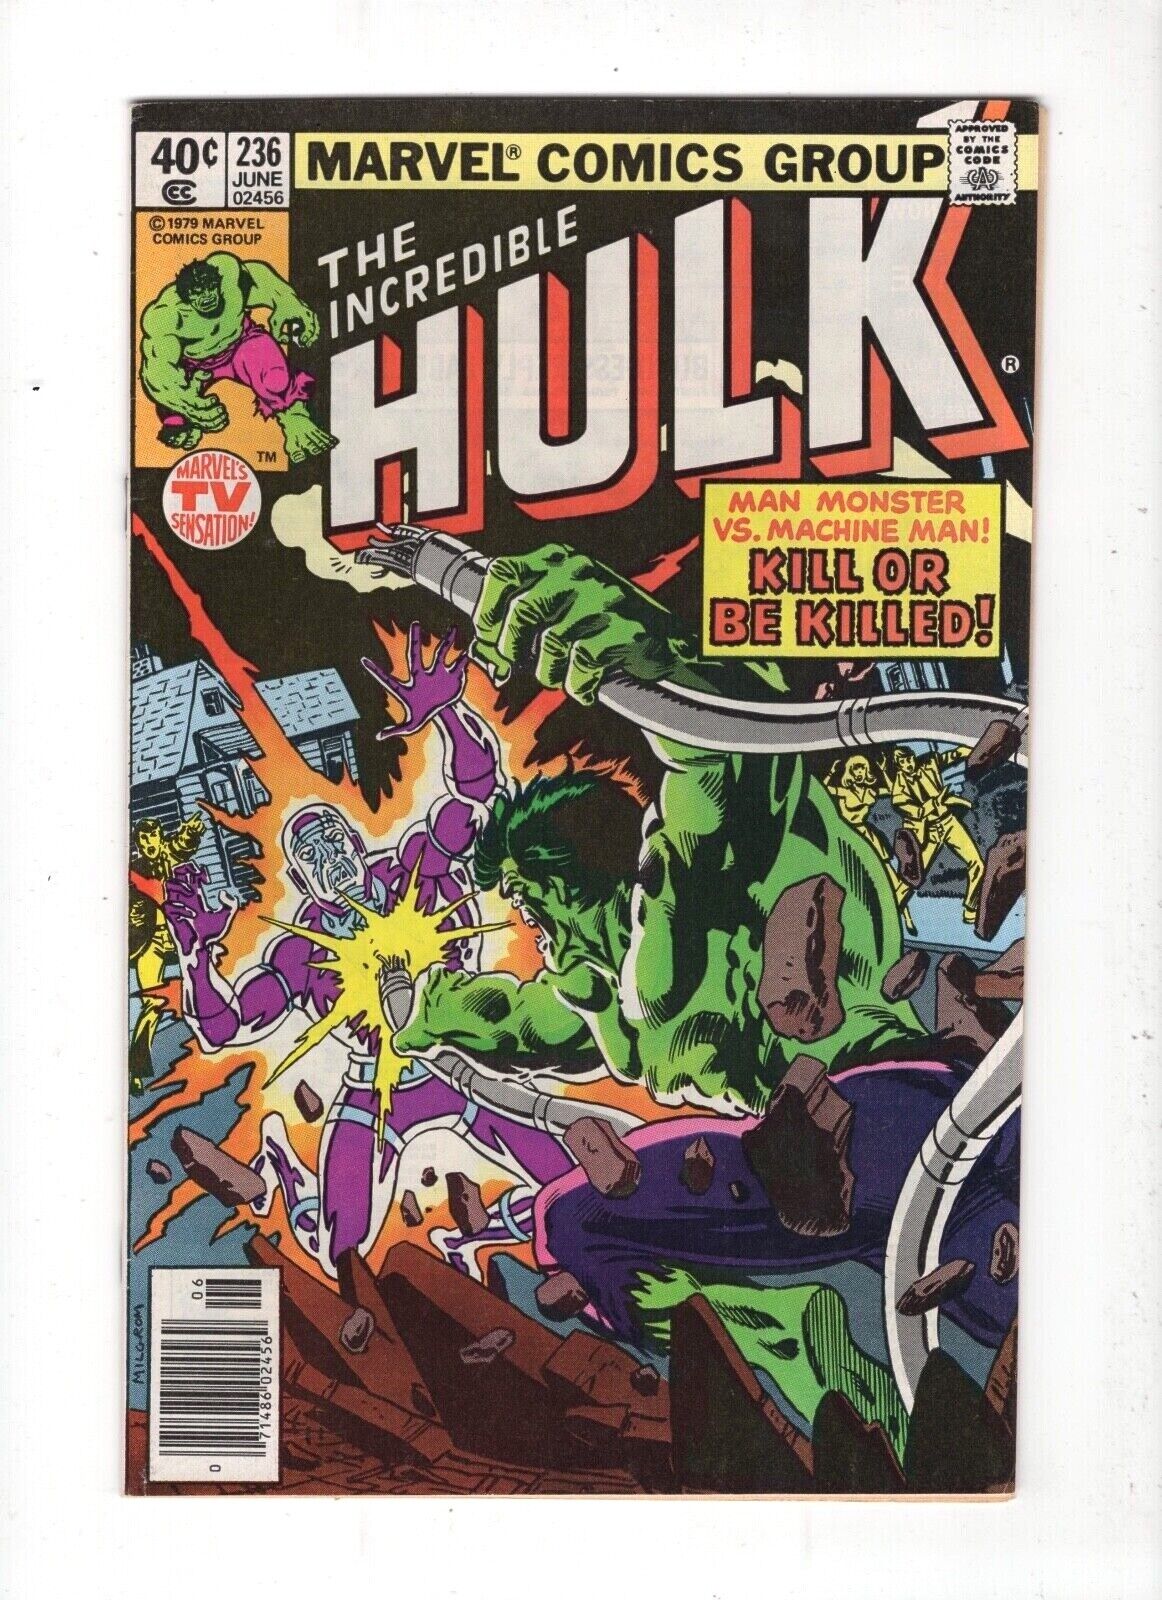 1979 Marvel Comics The Incredible Hulk #236 June Man Monster Vs Machine Man! 8.5